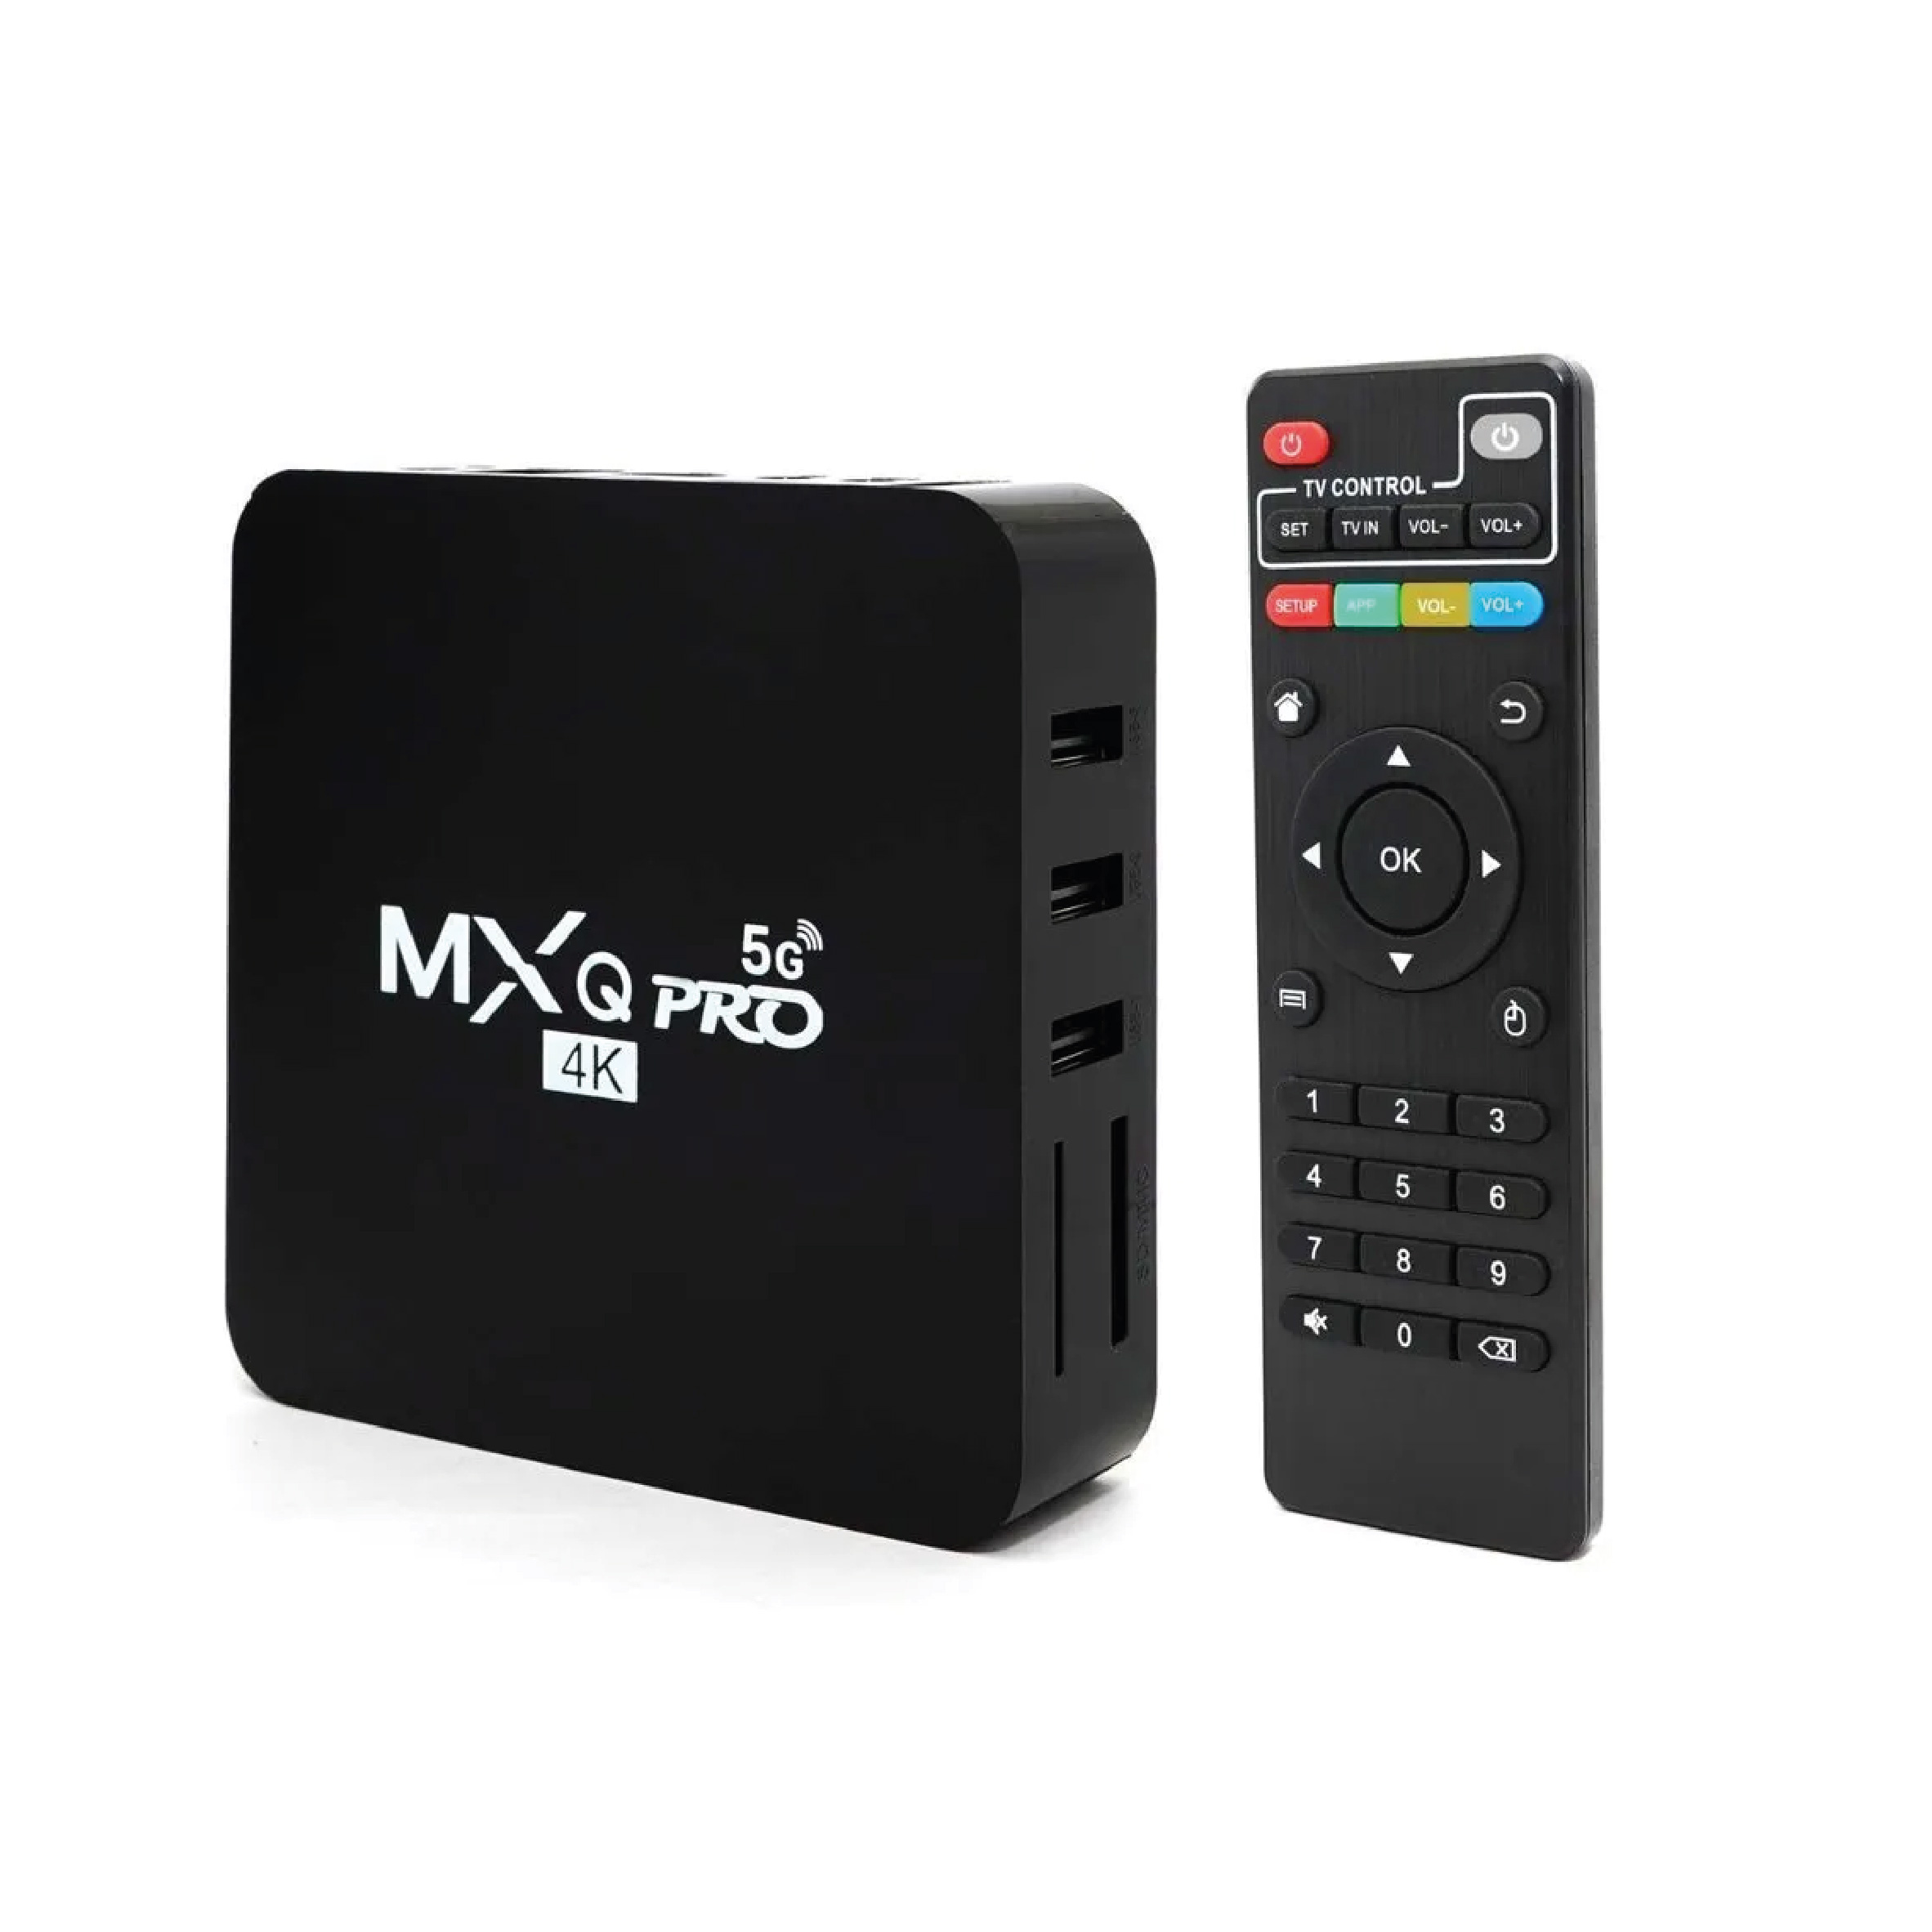 MXQ Pro Android TV Box 5G, 4K, CPU 64BIT, 4 Core, 4K UHD, Hevc H.265, MXQPRO